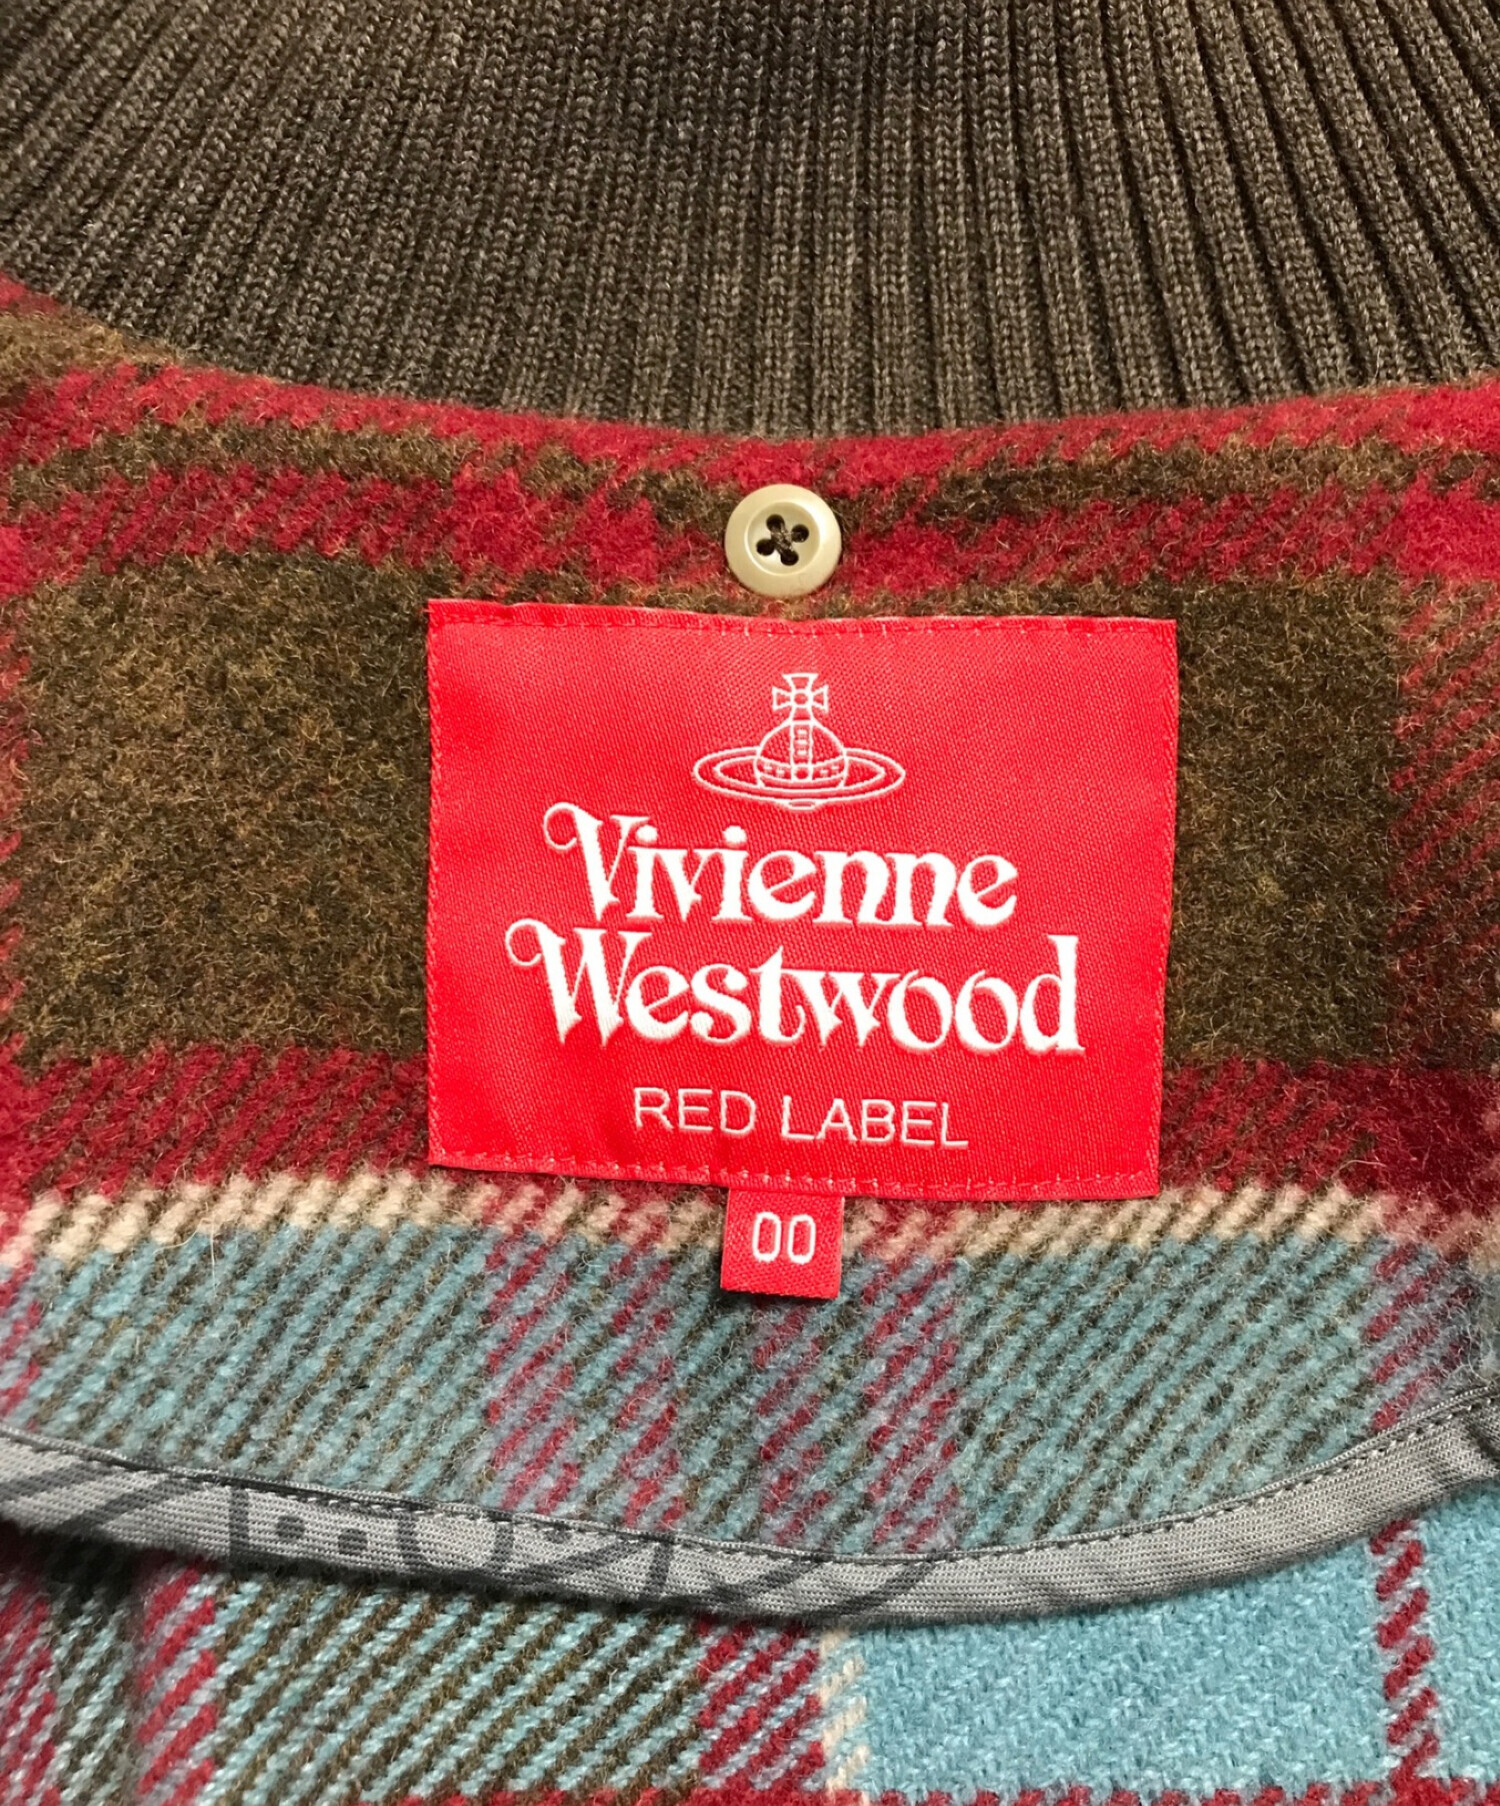 Vivienne Westwood RED LABEL (ヴィヴィアンウエストウッドレッドレーベル) ポンチョシジャケット ブルー×ブラウン サイズ:M